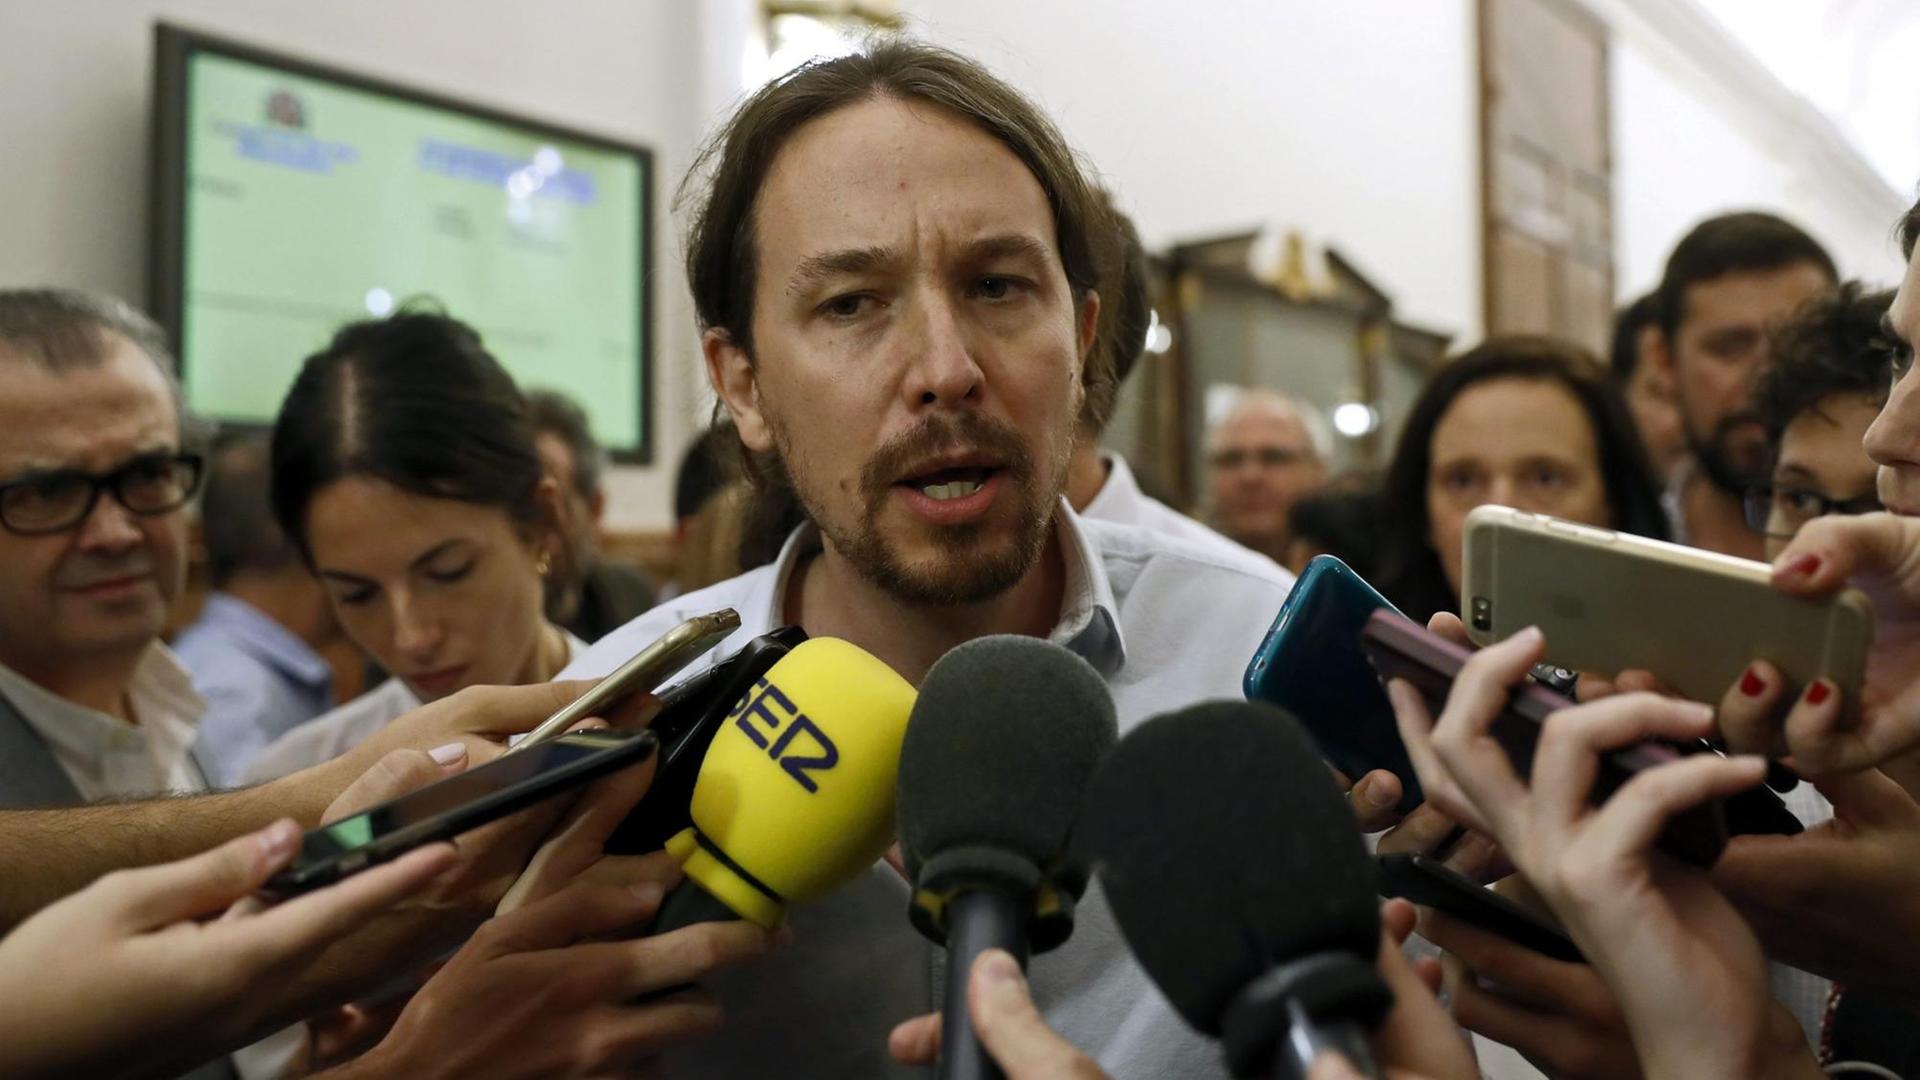 Pablo Iglesias, Chef der spanischen Partei Podemos, spricht mit der Presse, nachdem er sich 2016 im Parlament in Madrid gegen Vorwürfe der illegalen Parteienfinanzierung aus Venezuela verteidigt hat.